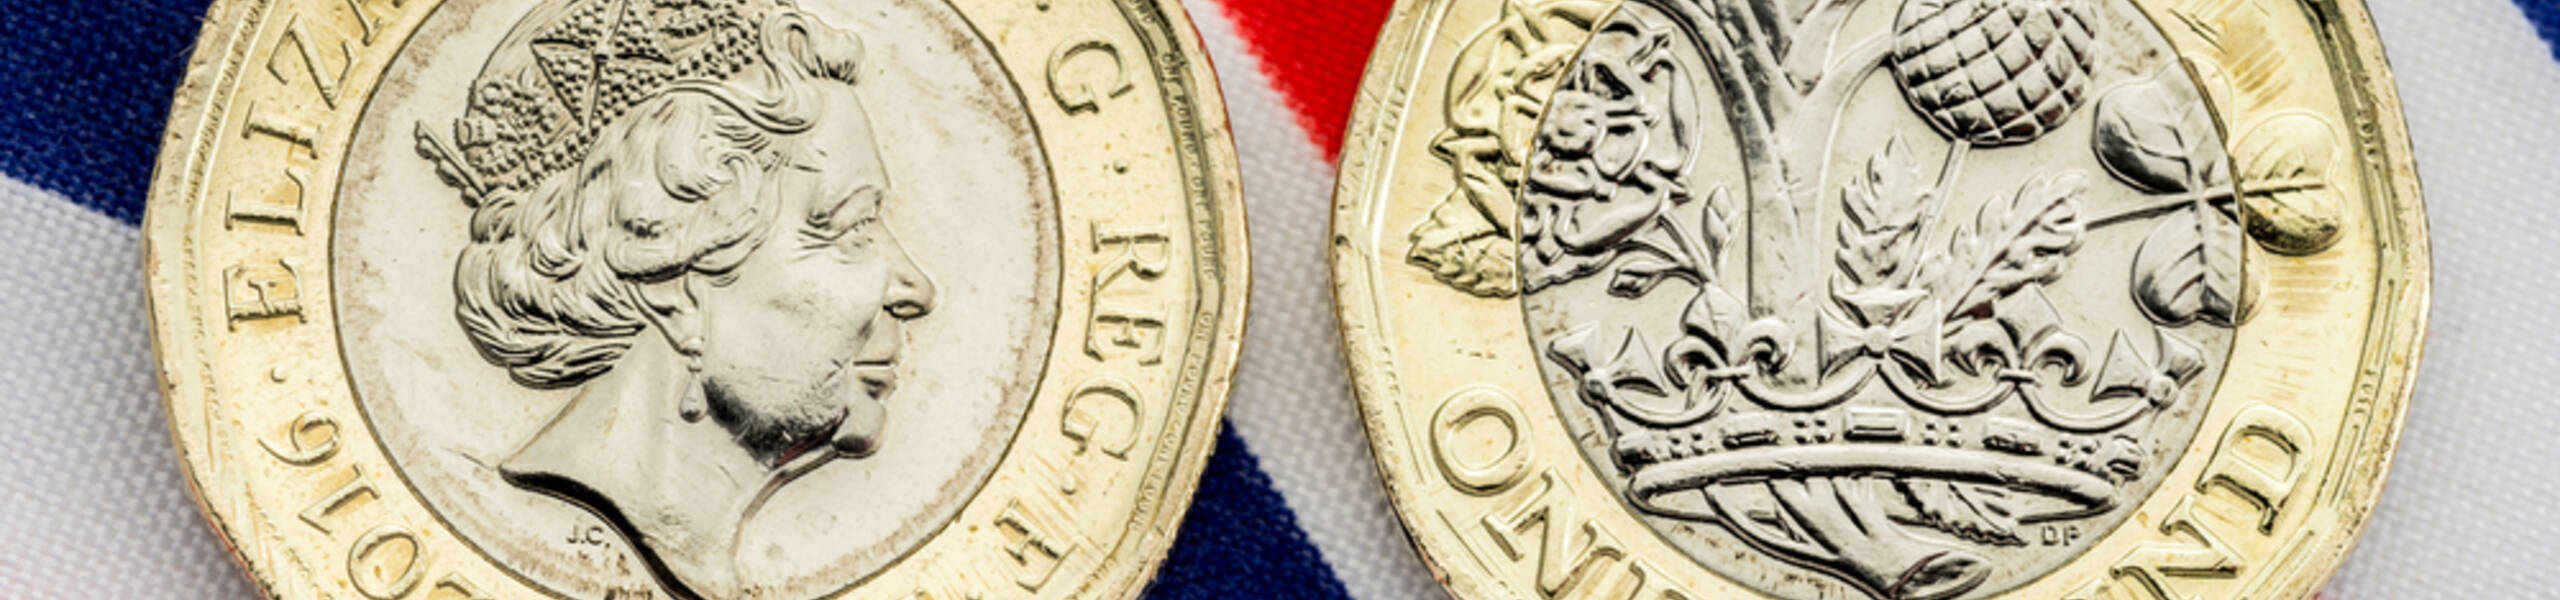 Compradores do GBP/JPY podem se animar em torno da política britânica